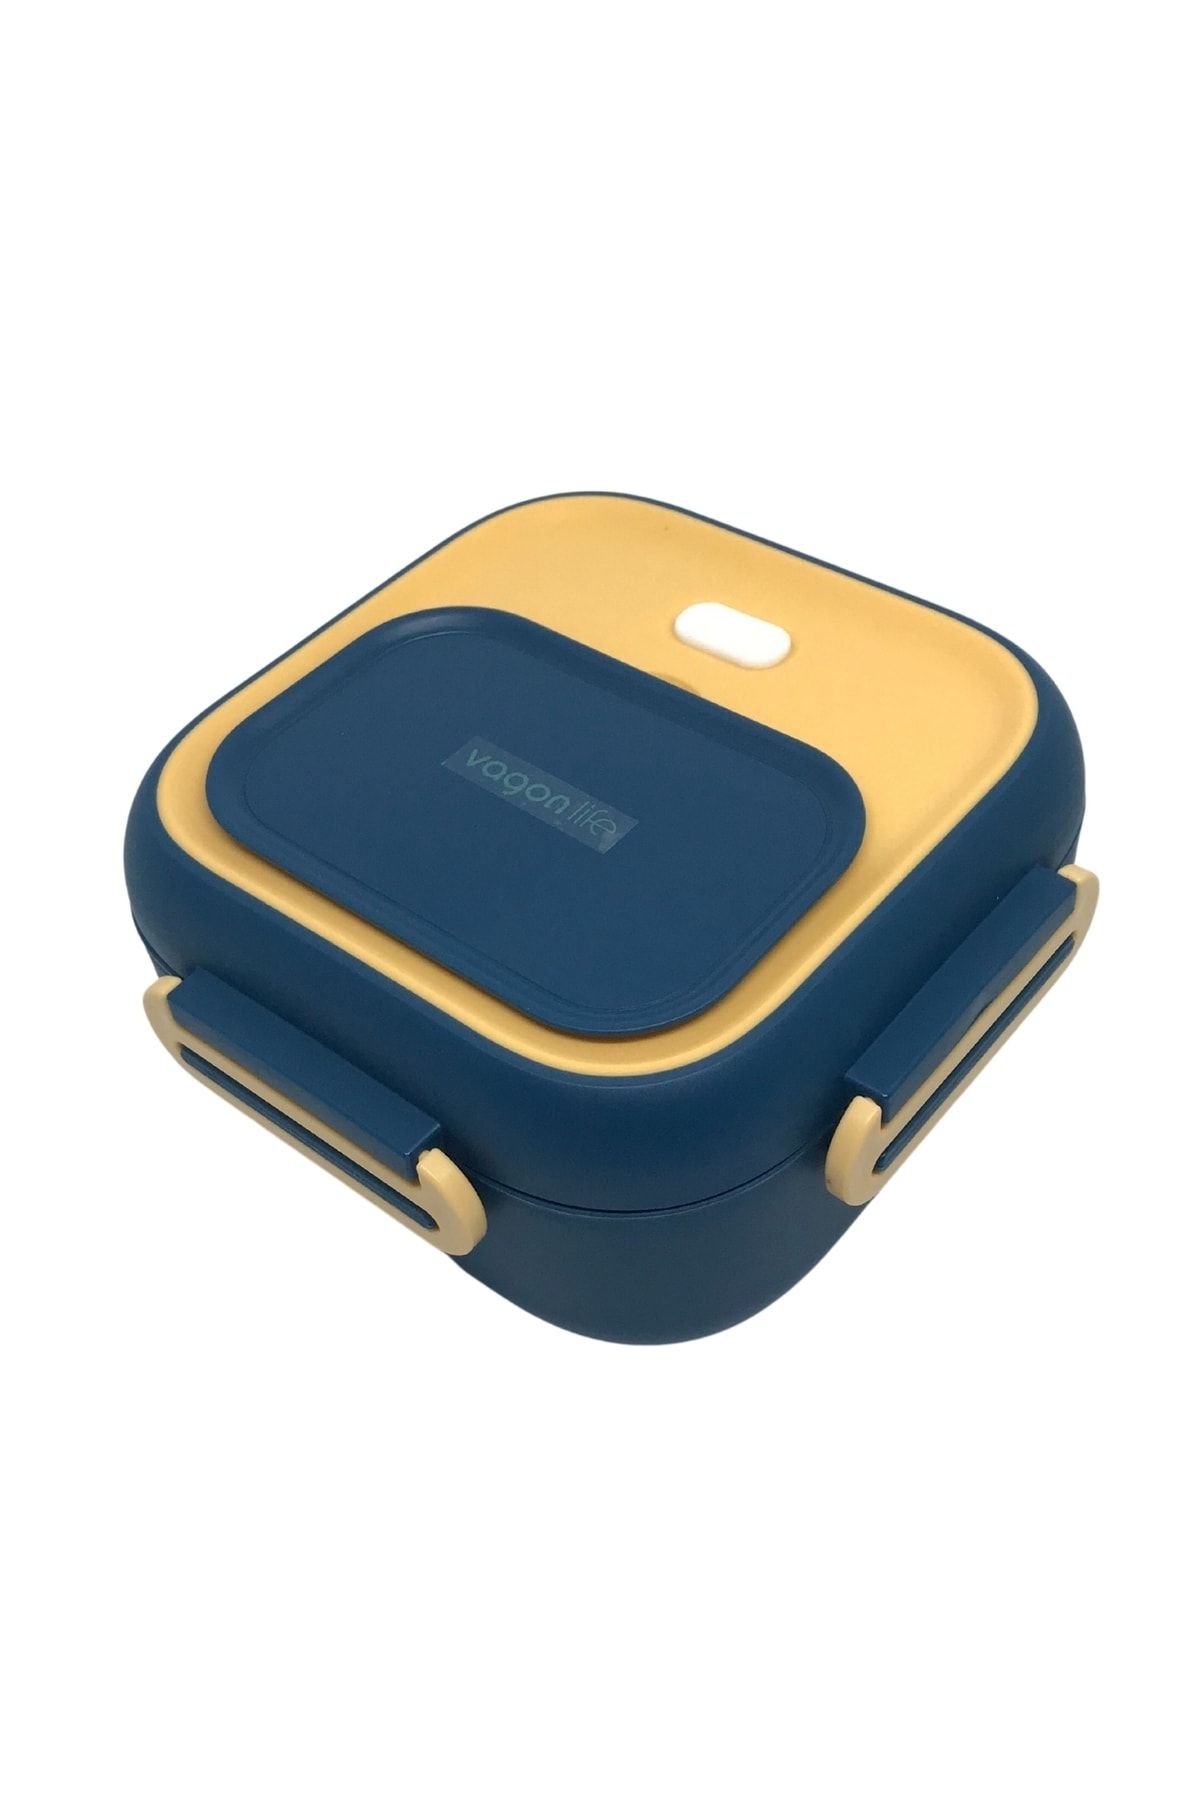 Vagonlife Bento 500ml Lunchbox Yeni Koleksiyon Tek Katlı Çelik Sefer Tası Yemek Kutusu